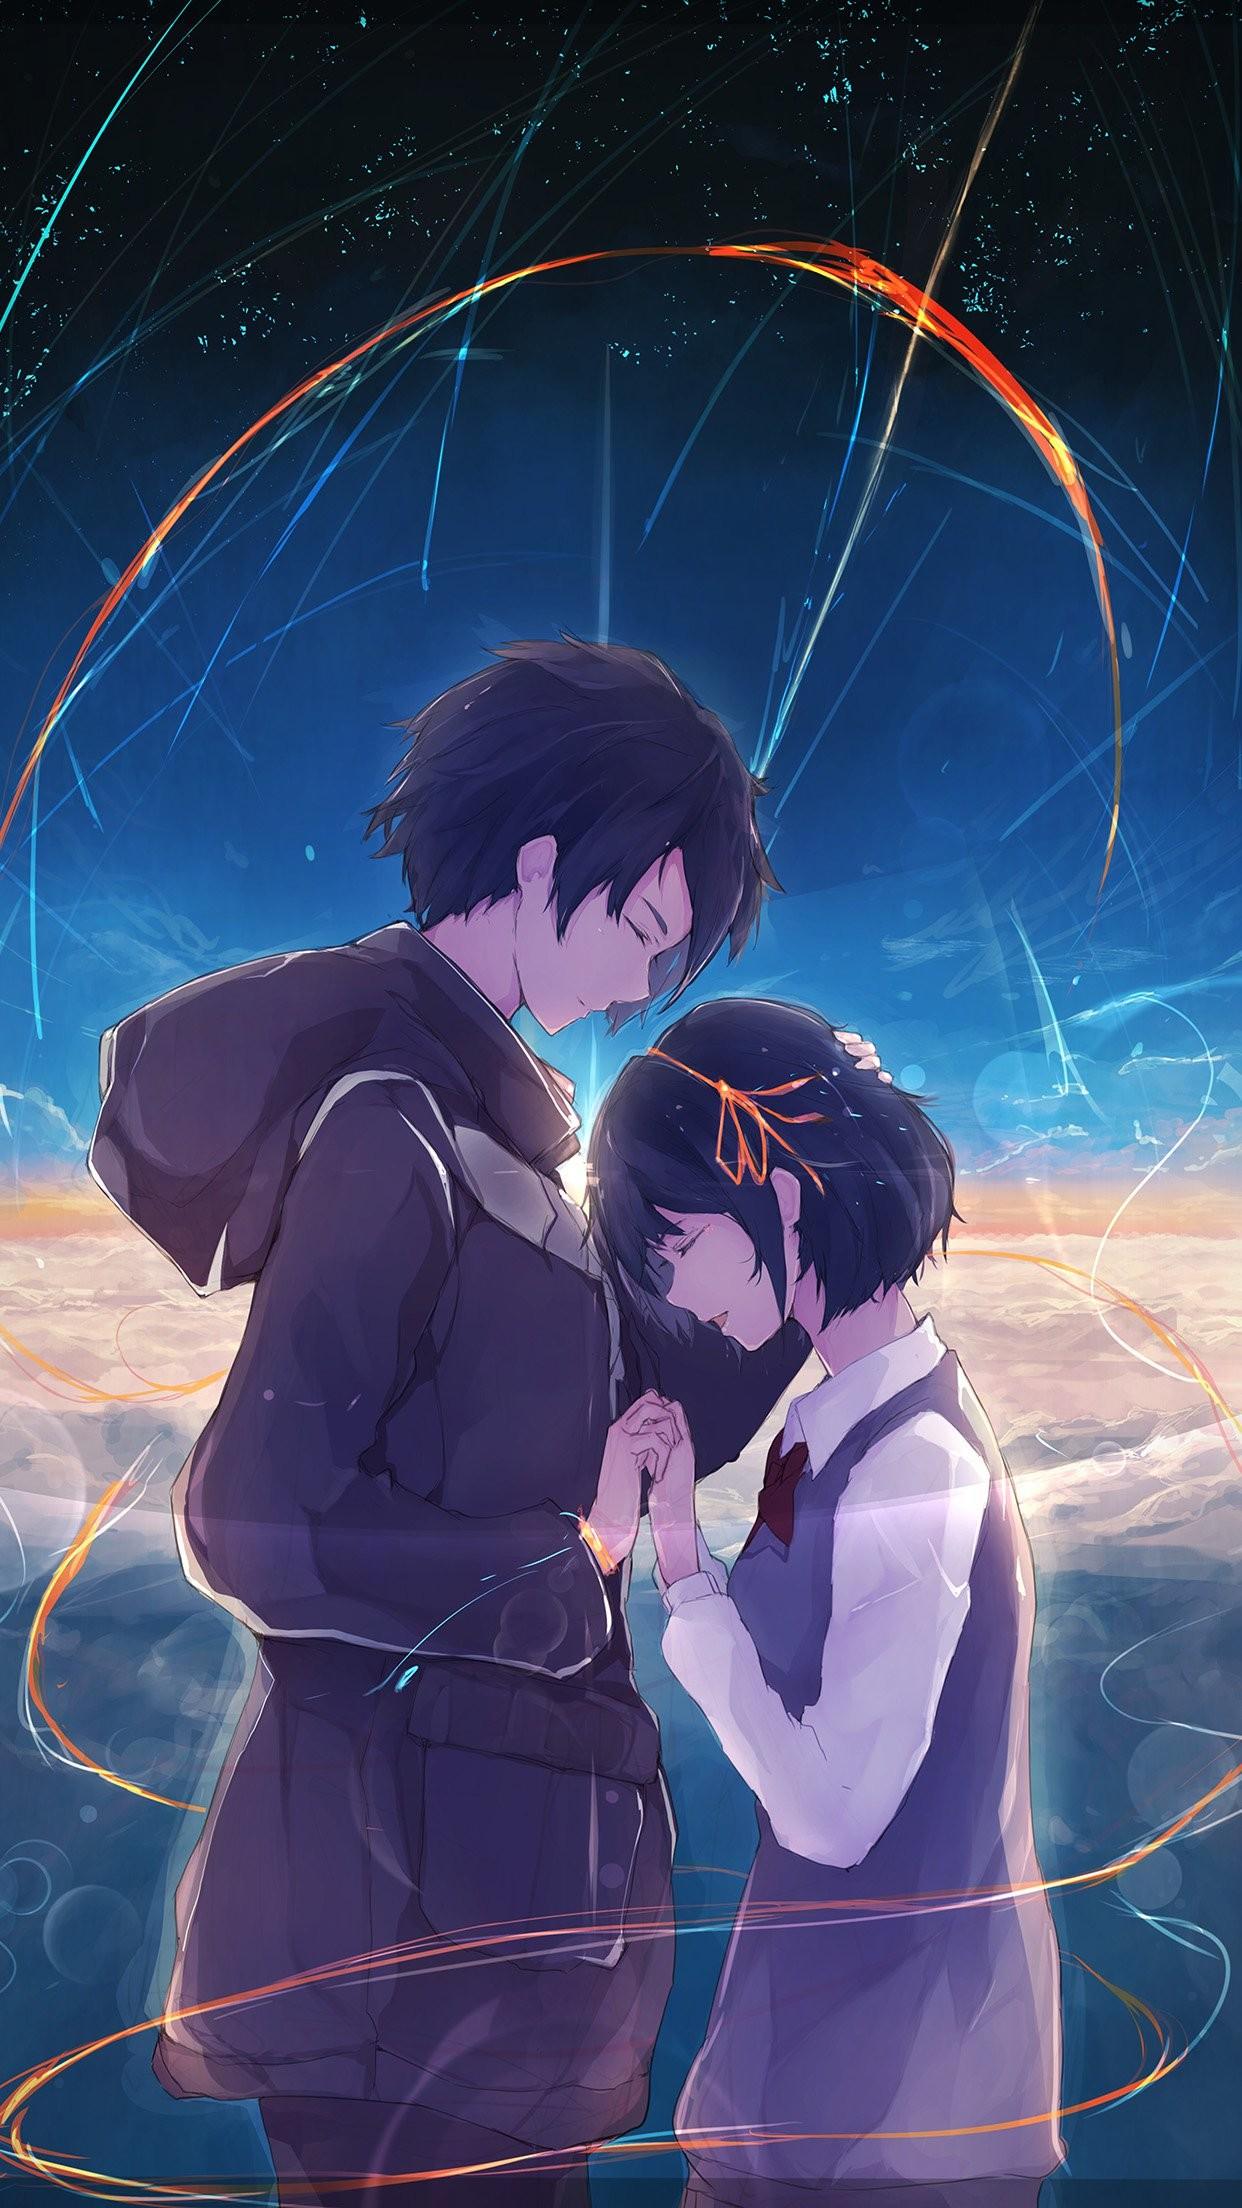 Những tấm hình nền về cặp đôi Anime trên Android là lựa chọn đáng yêu cho các fan của Anime. Hãy tải về và cảm nhận tình yêu đong đầy và tiếng cười vui tươi của những nhân vật được yêu thích trên màn hình điện thoại của bạn.